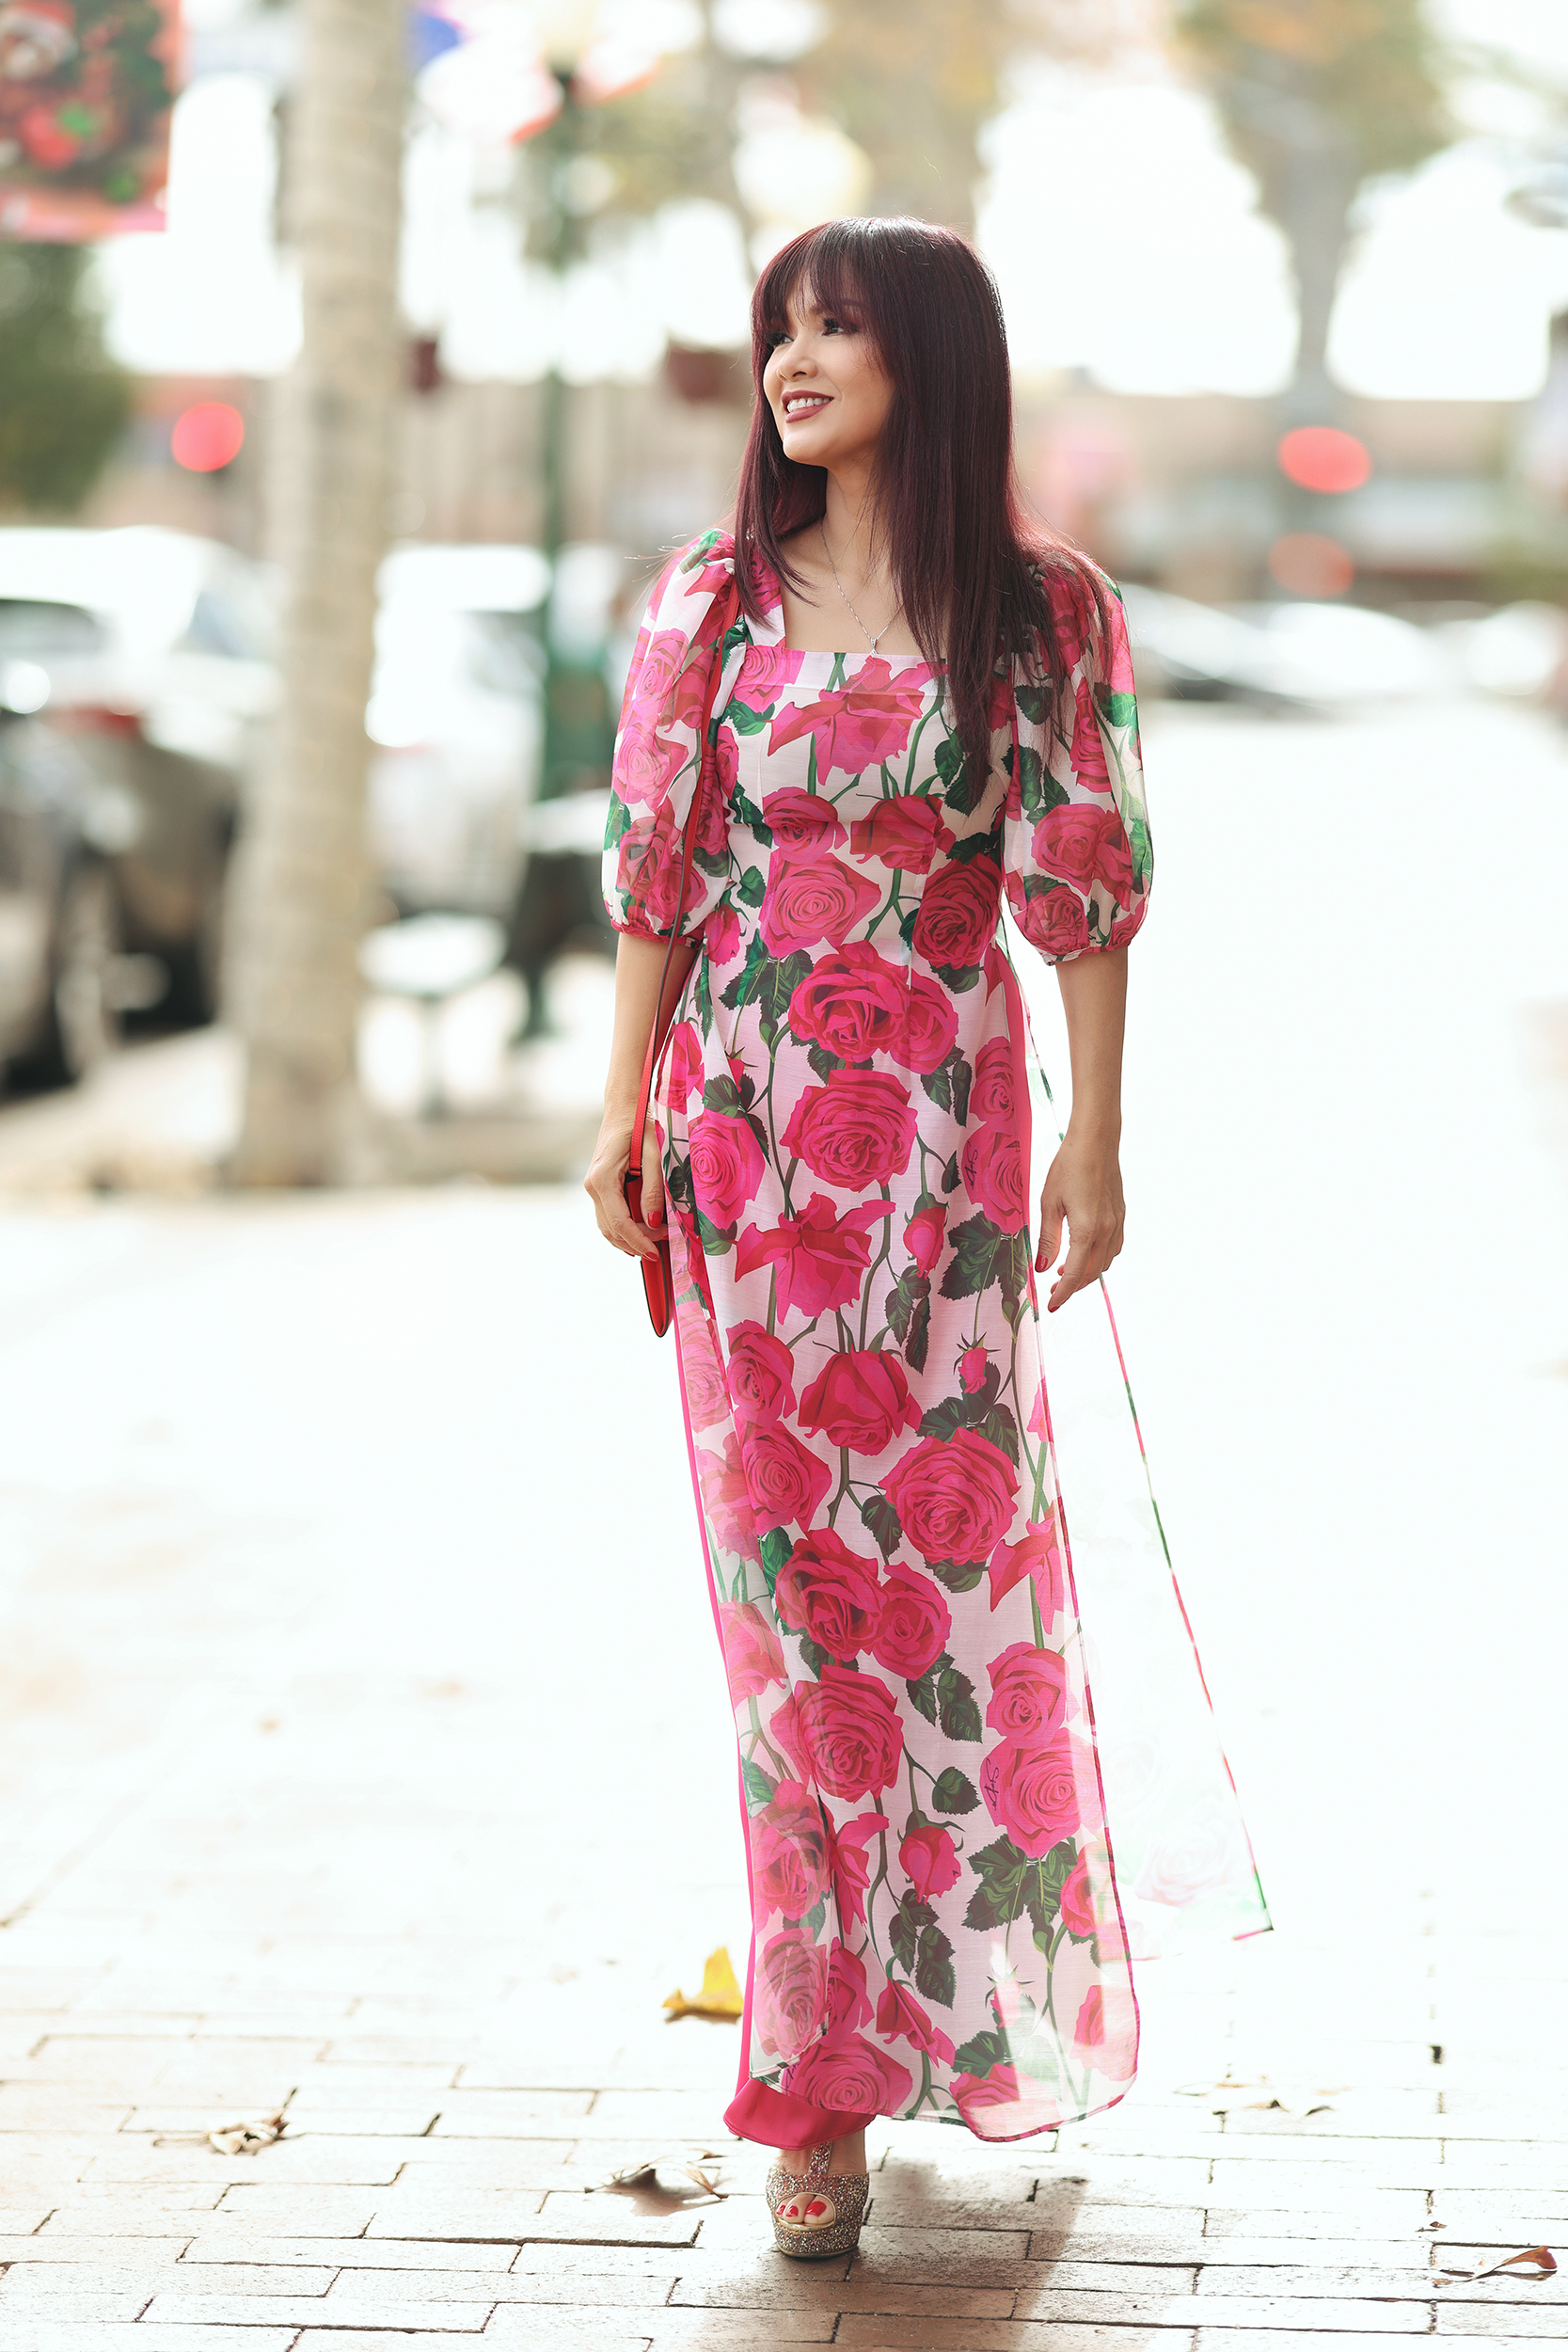 Hoa hậu Ngọc Hân với ý tưởng kết hợp văn hóa Nhật Bản và Việt Nam trong tà áo dài - ảnh 14